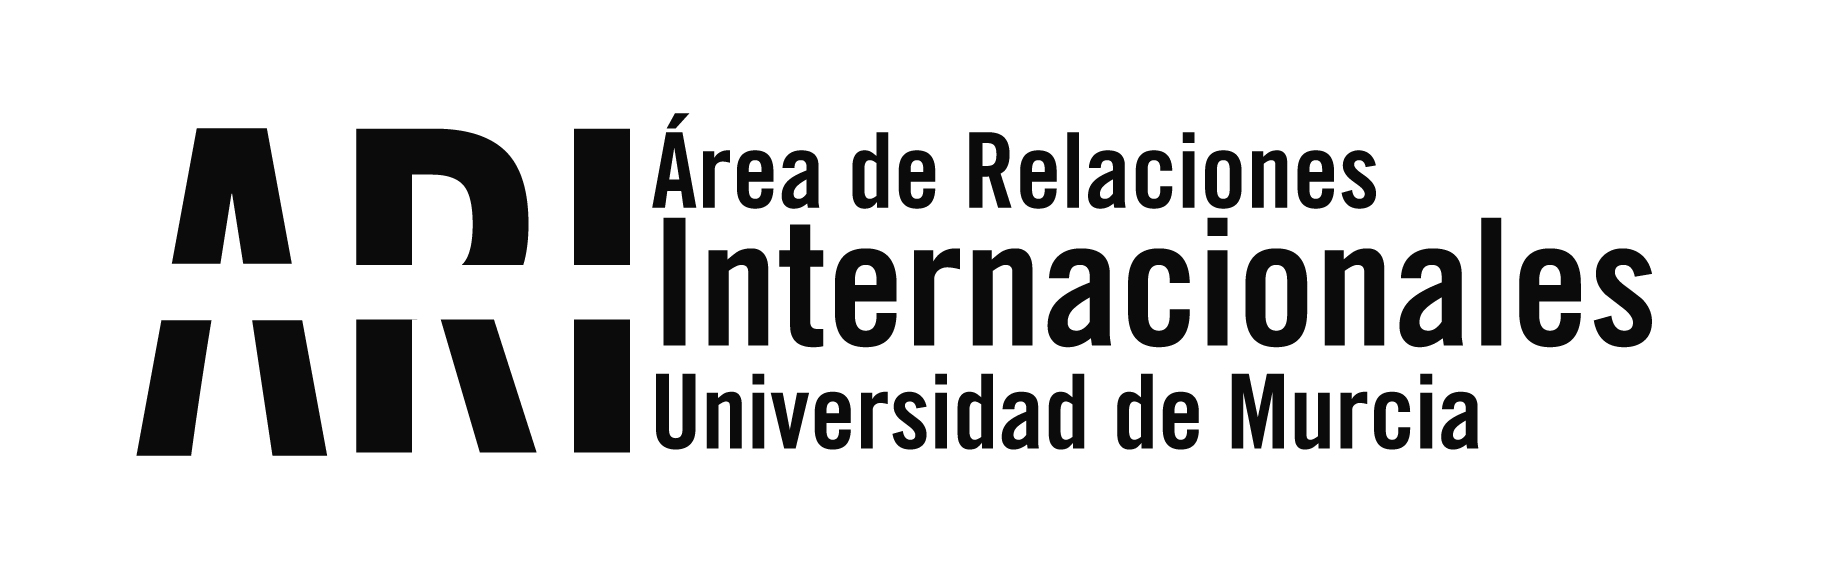 Presentado un protocolo de acción tutorial de los programas de movilidad internacional de la UMU - Área de Relaciones Internacionales